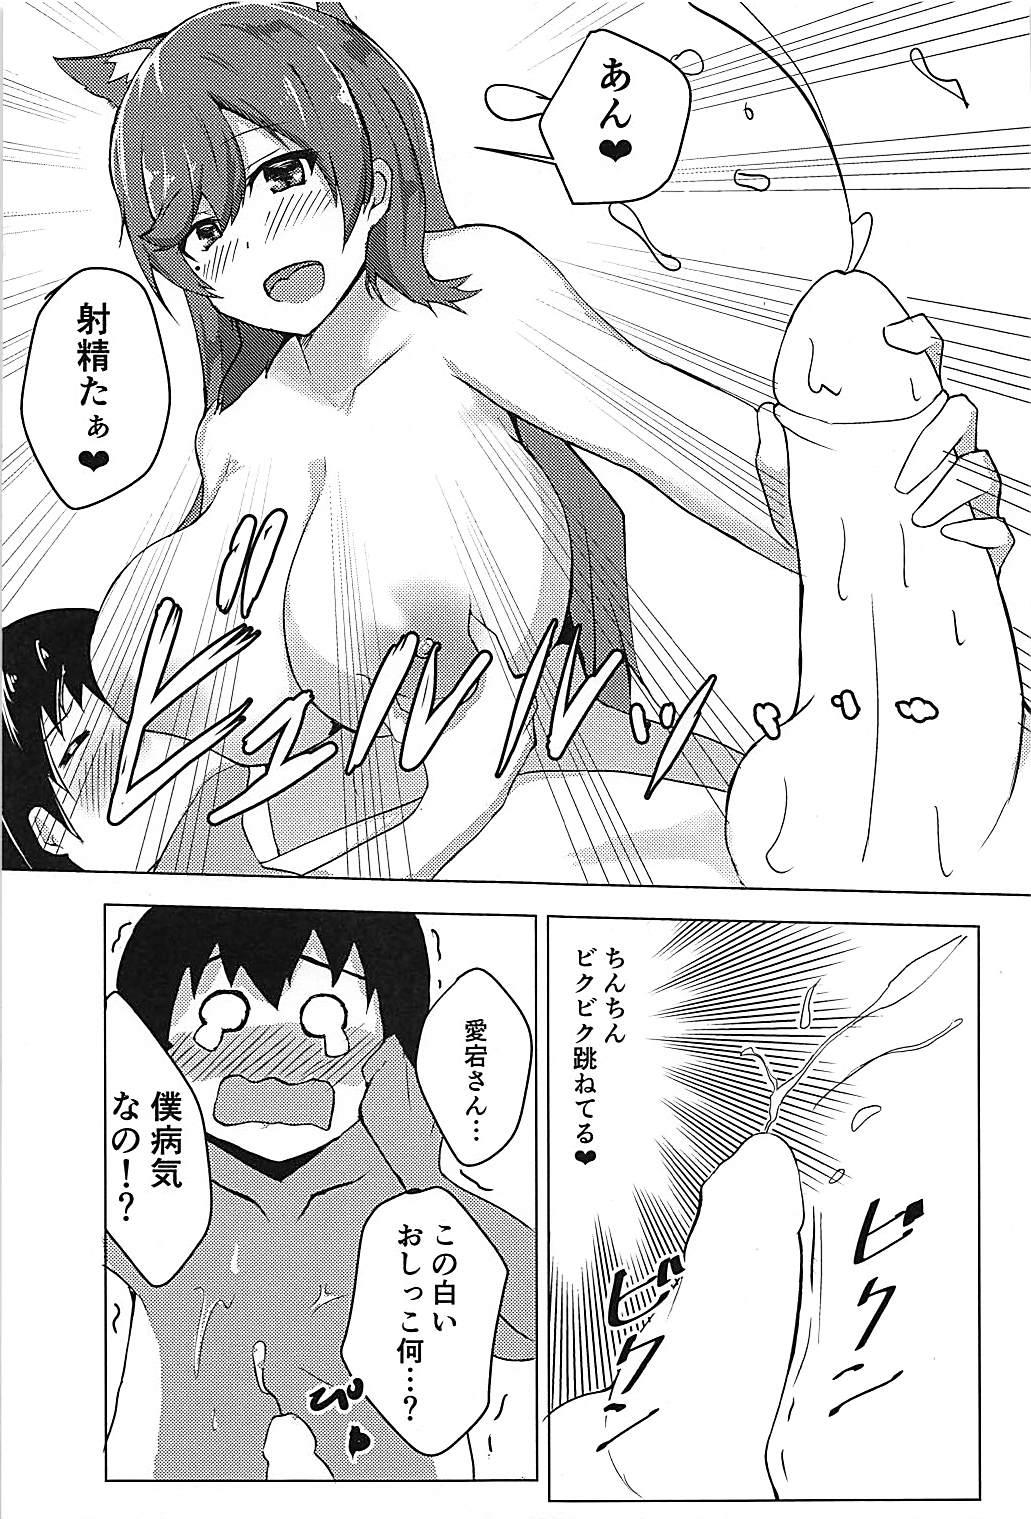 Camgirl Watashi no Mune ni Tobikon de - Azur lane Dorm - Page 8